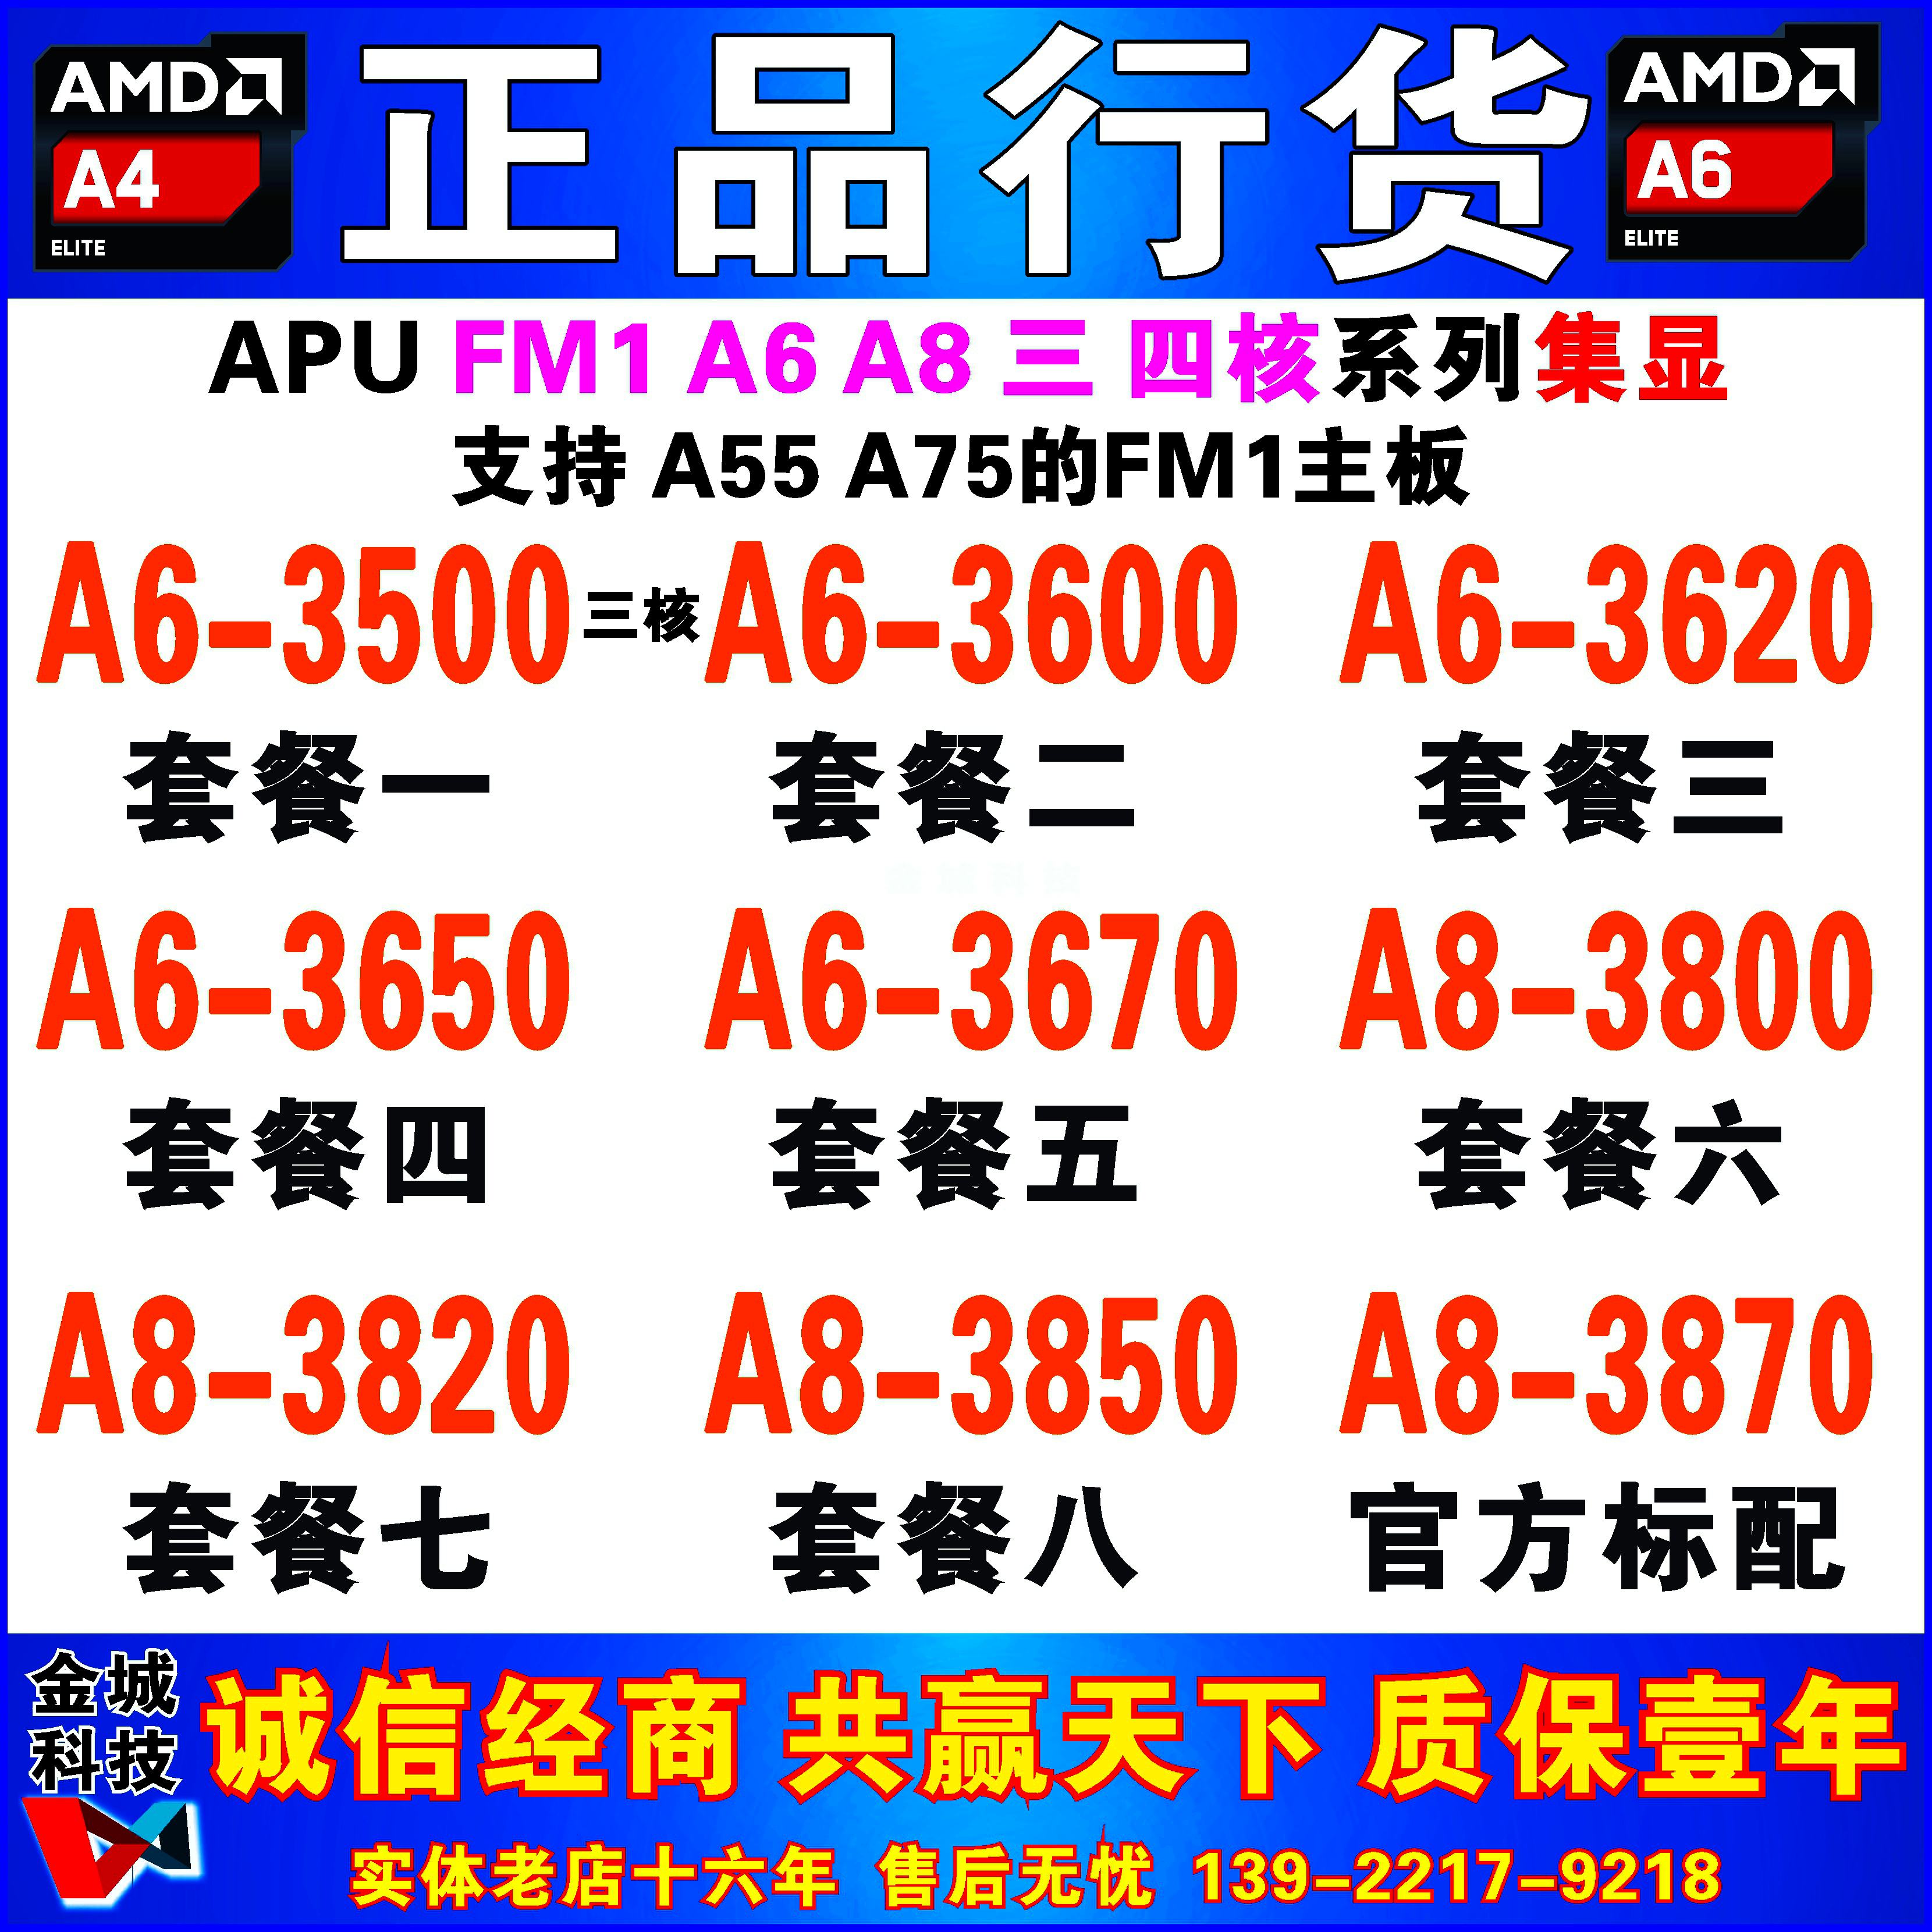 Amd A6 3670 ราคาถูก ซื้อออนไลน์ที่ - มี.ค. 2023 | Lazada.co.th